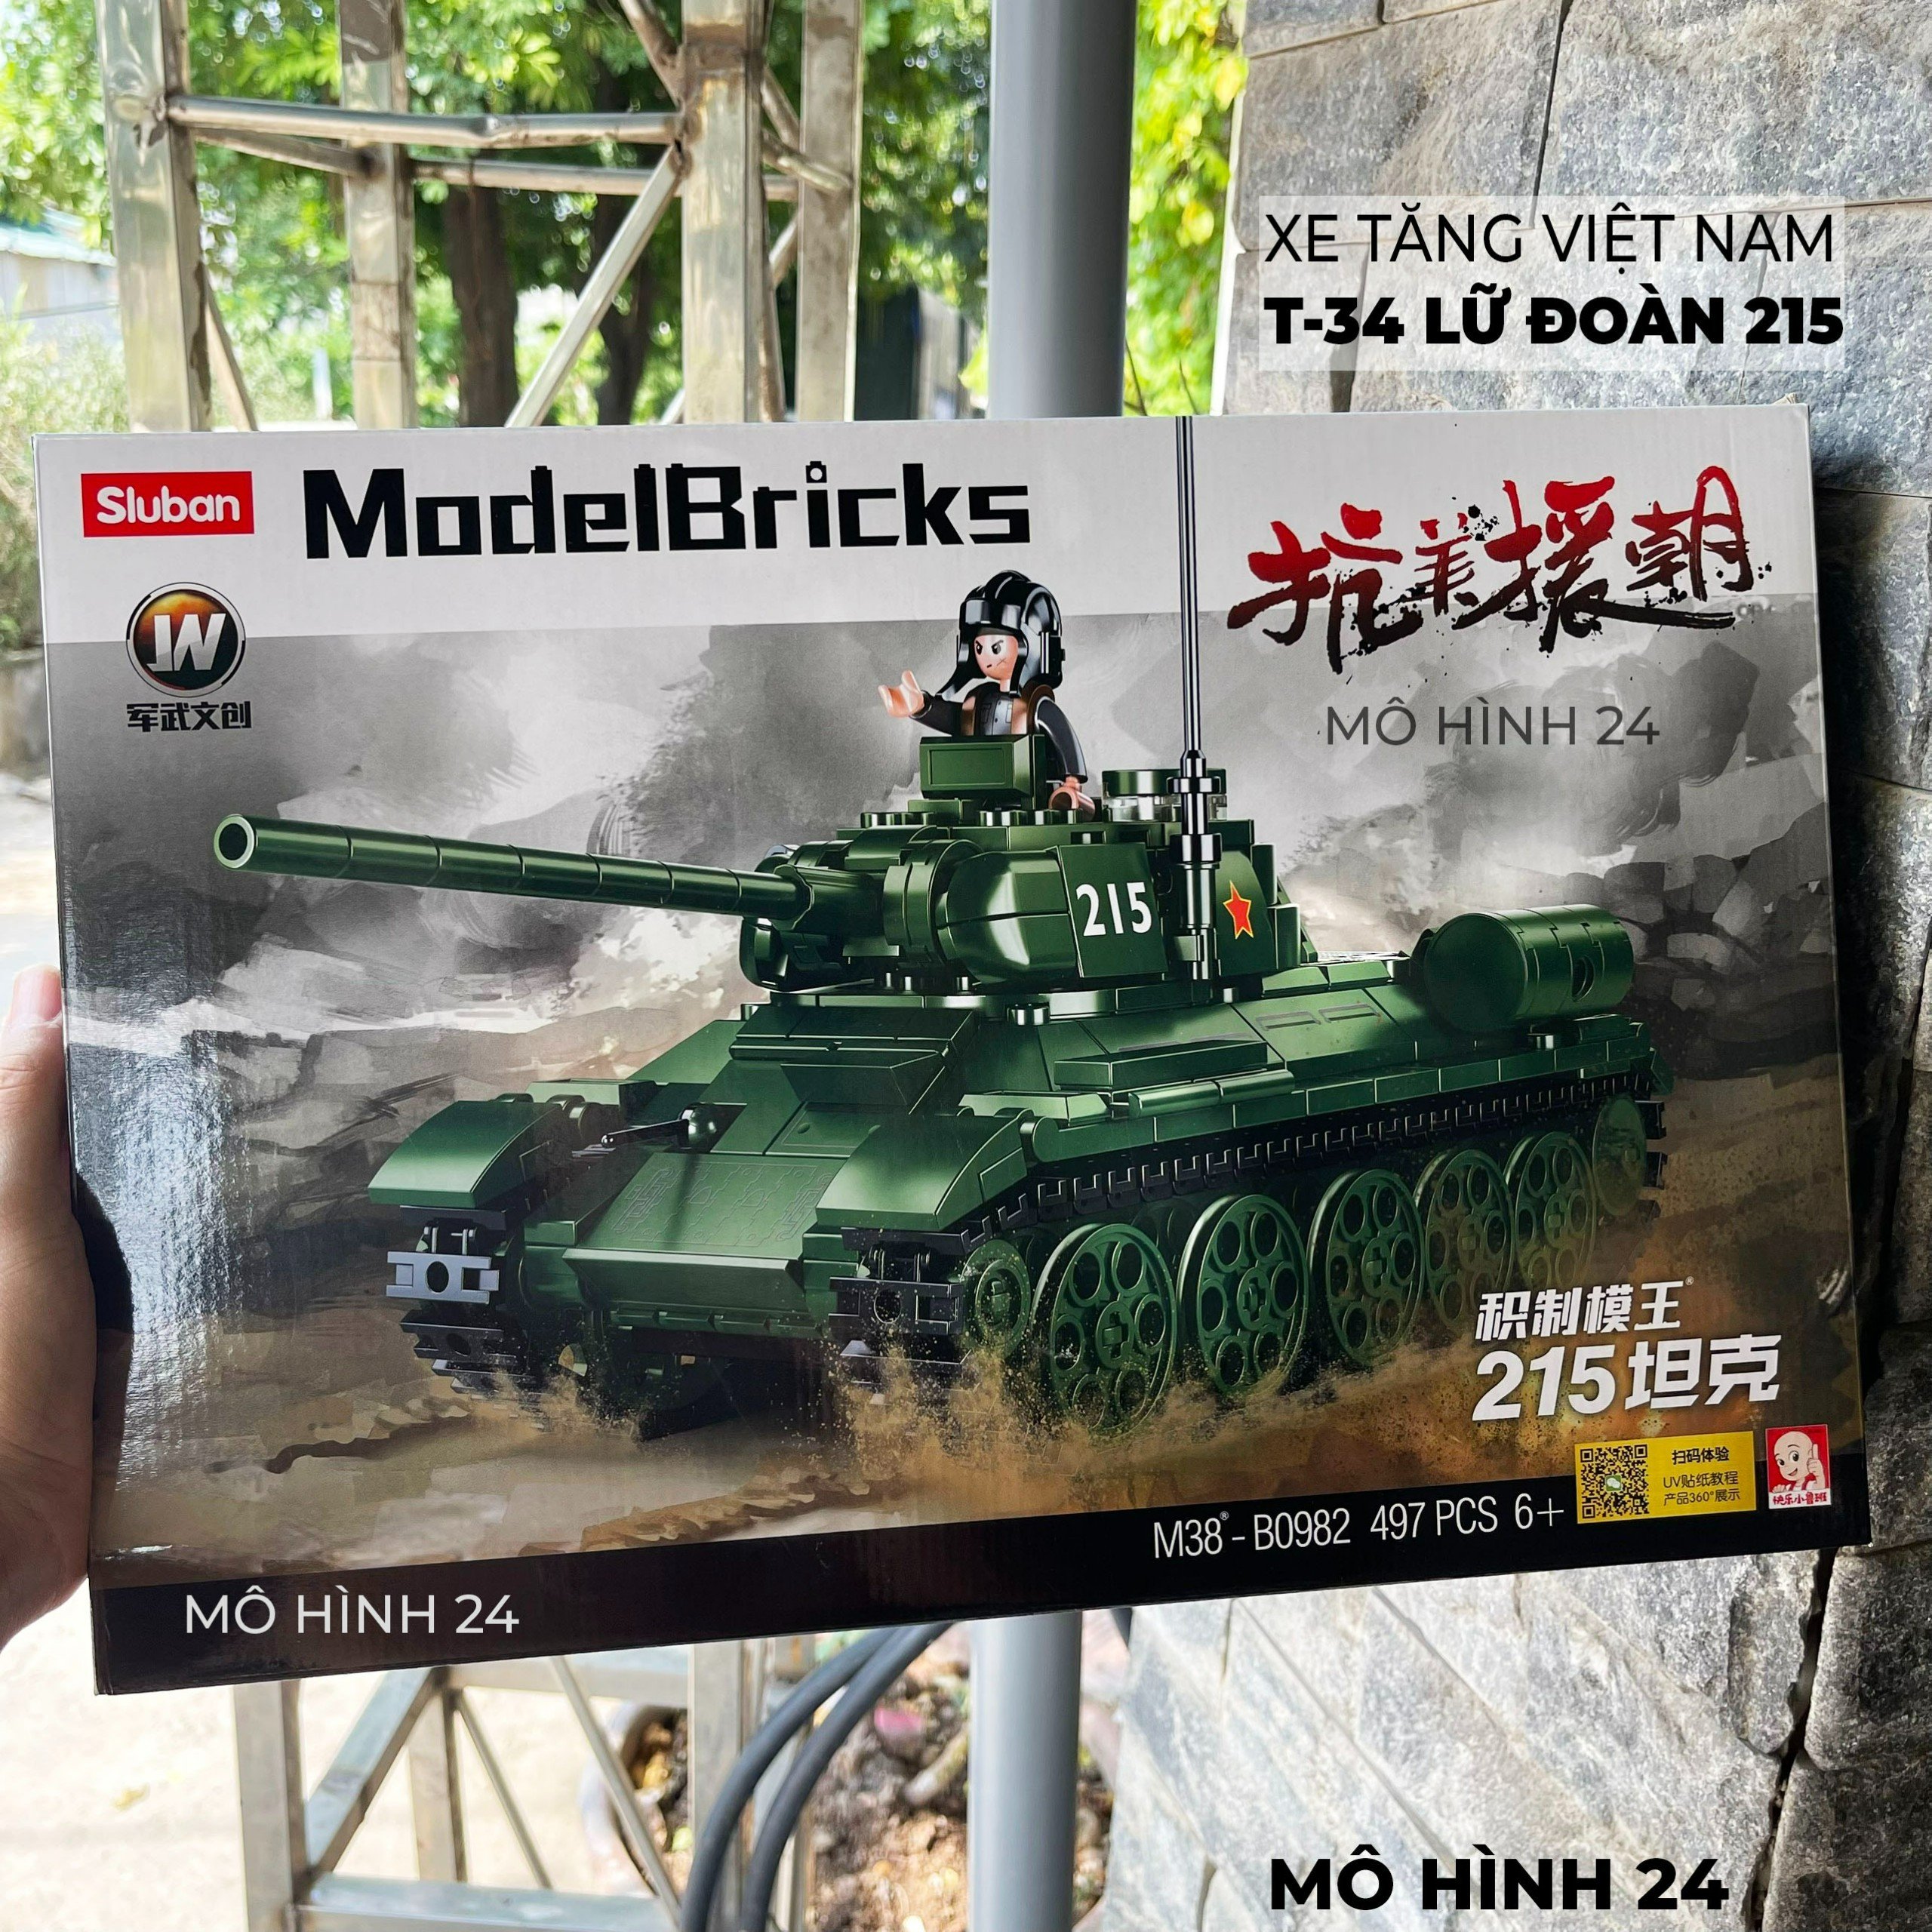 Bộ đồ chơi mô hình non lego Lắp Ráp Mô Hình xe tăng MOC 432 chi tiết lego xe tăng semboblock le.go xe tăng T34